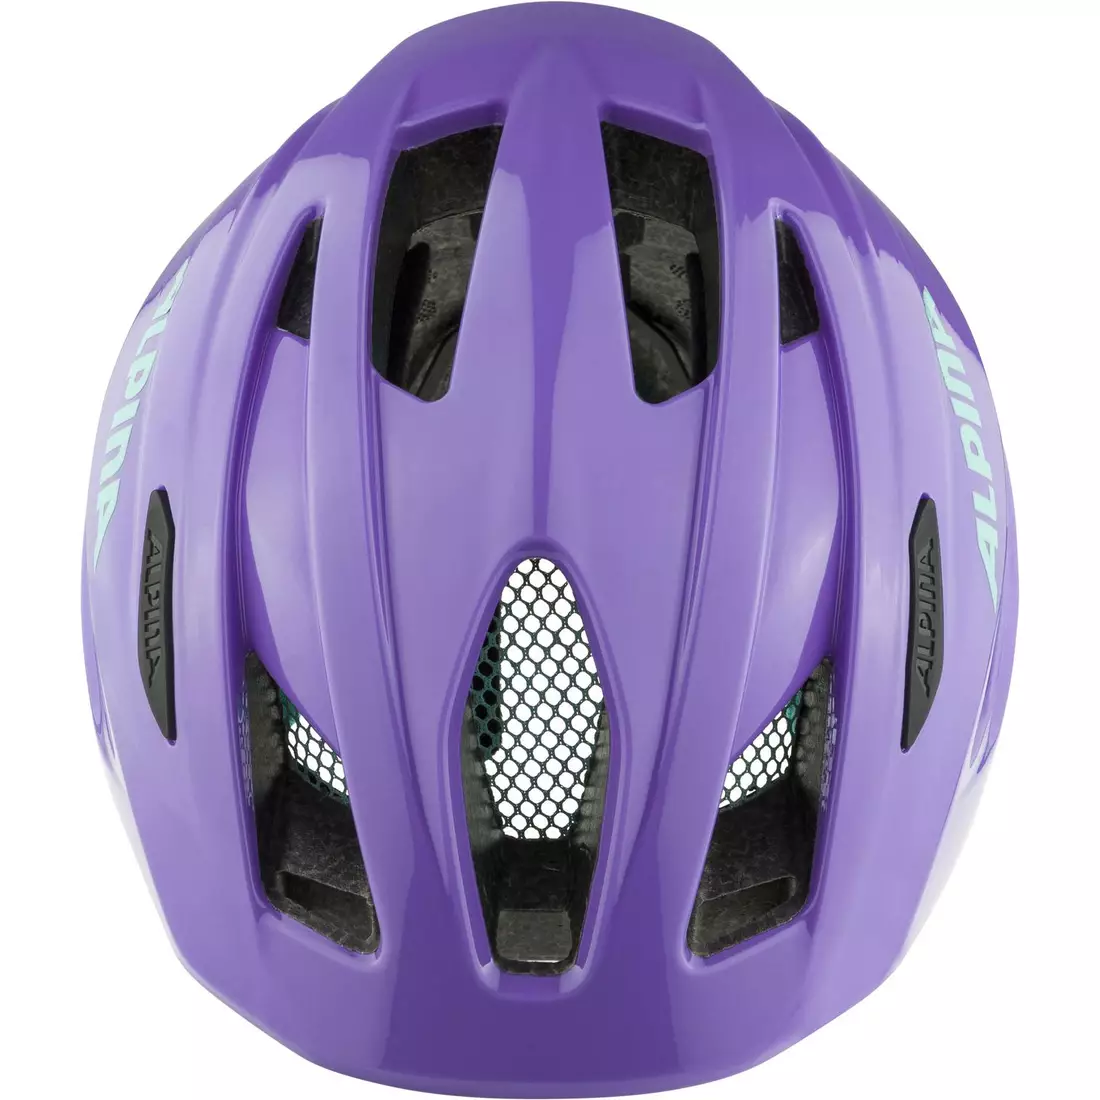 ALPINA PICO gyerek mtb kerékpáros sisak, purple gloss